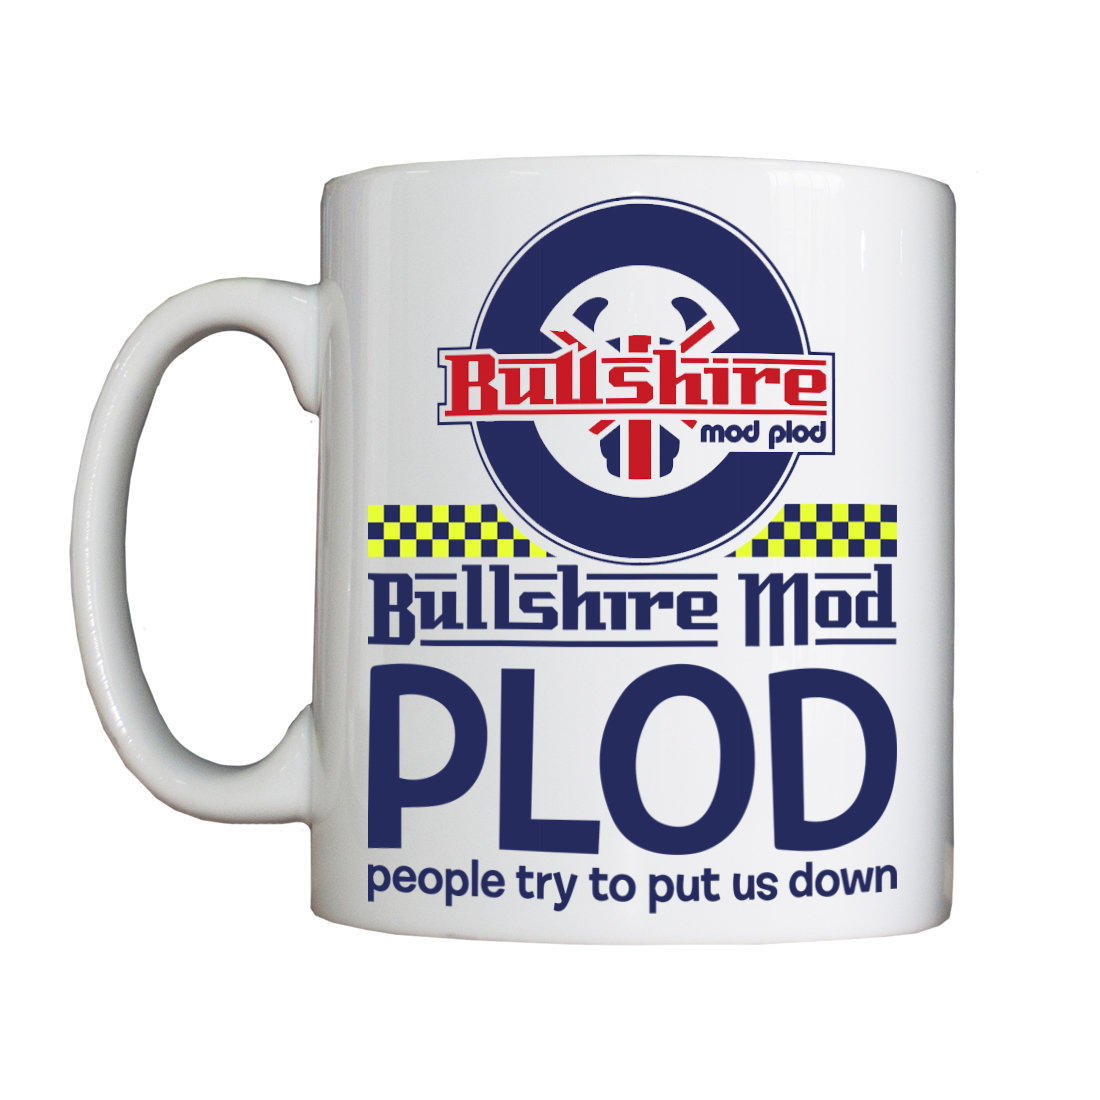 Personalised 'Bullshire Mod Plod' Drinking Vessel